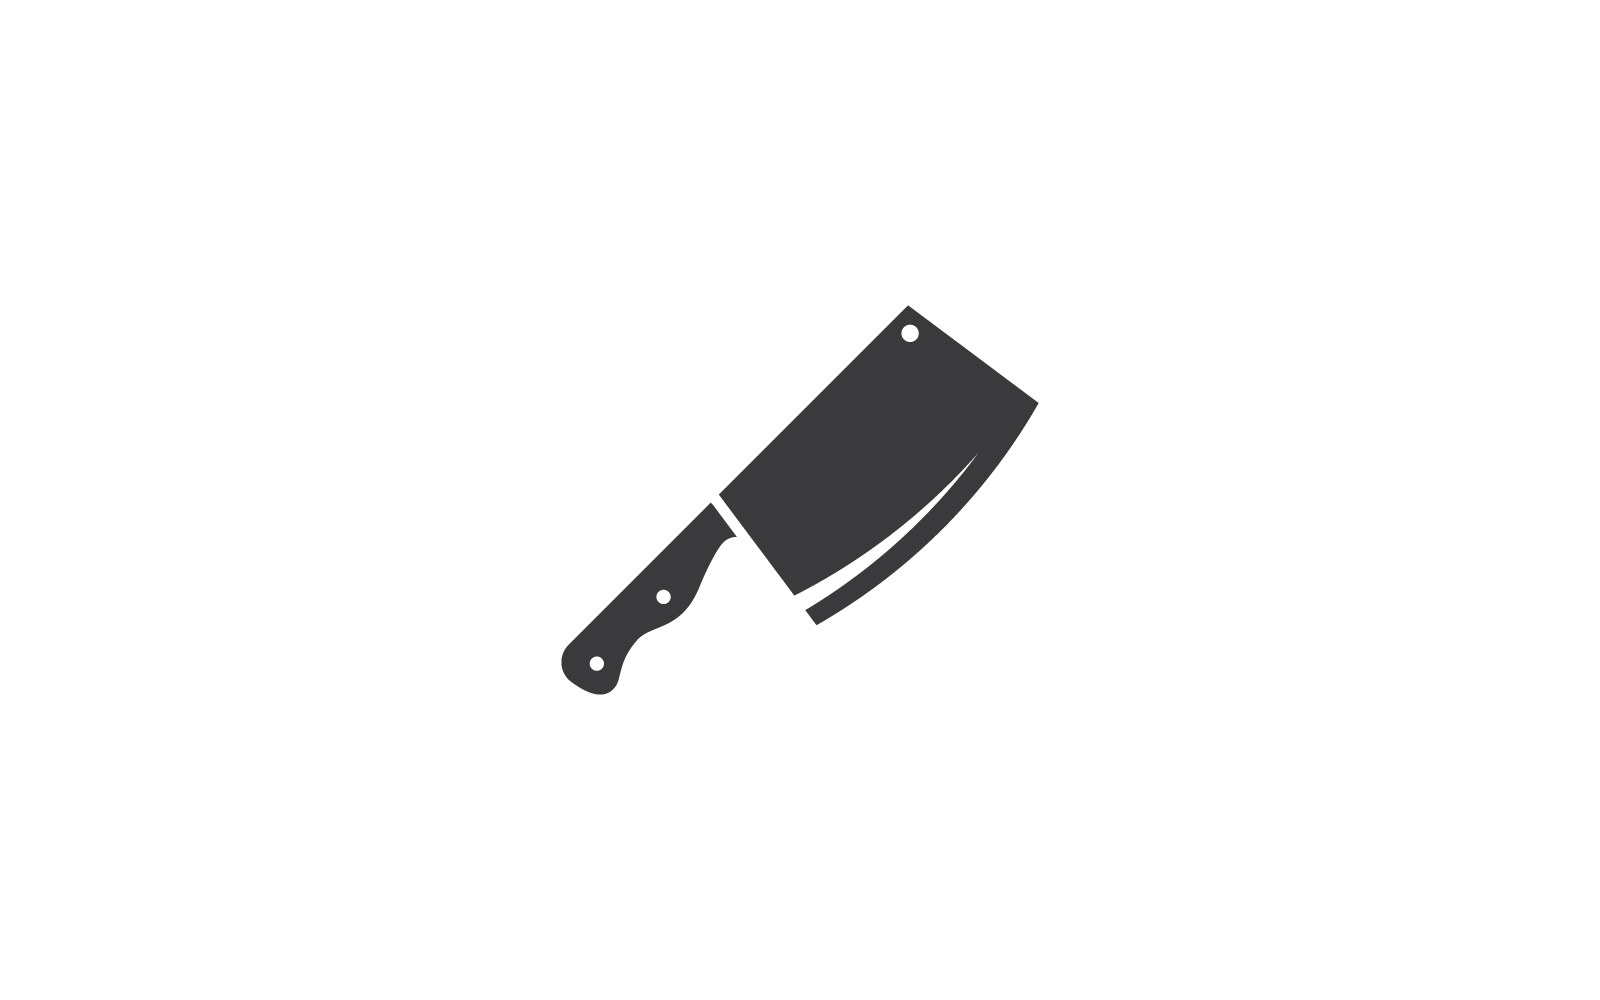 Vorlage für das Logo des Messerkochkochs